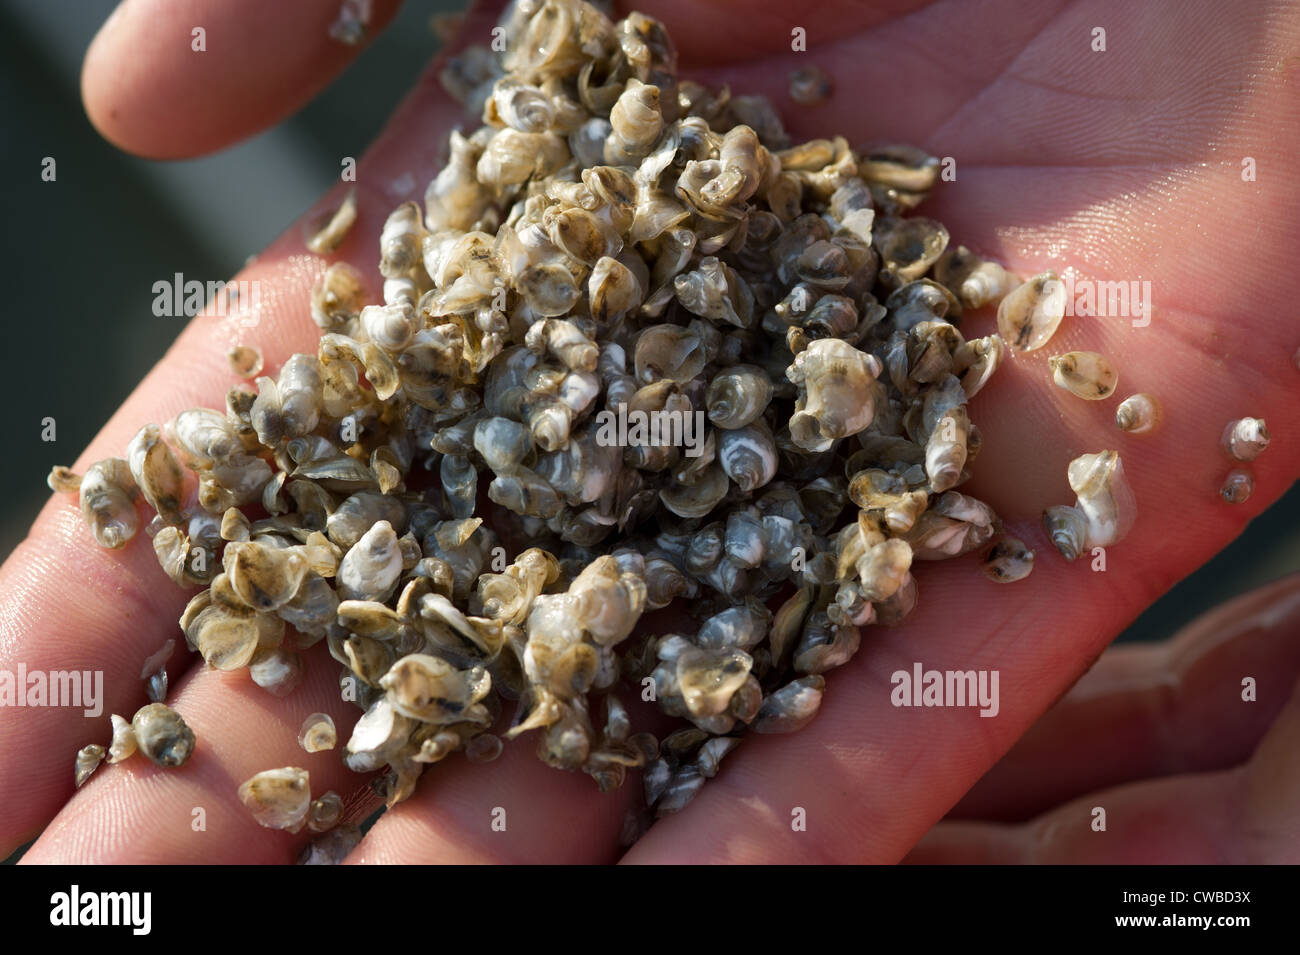 Baby Austernschalen in einer Hand, Shooting Point Austern, Bayford VA Stockfoto